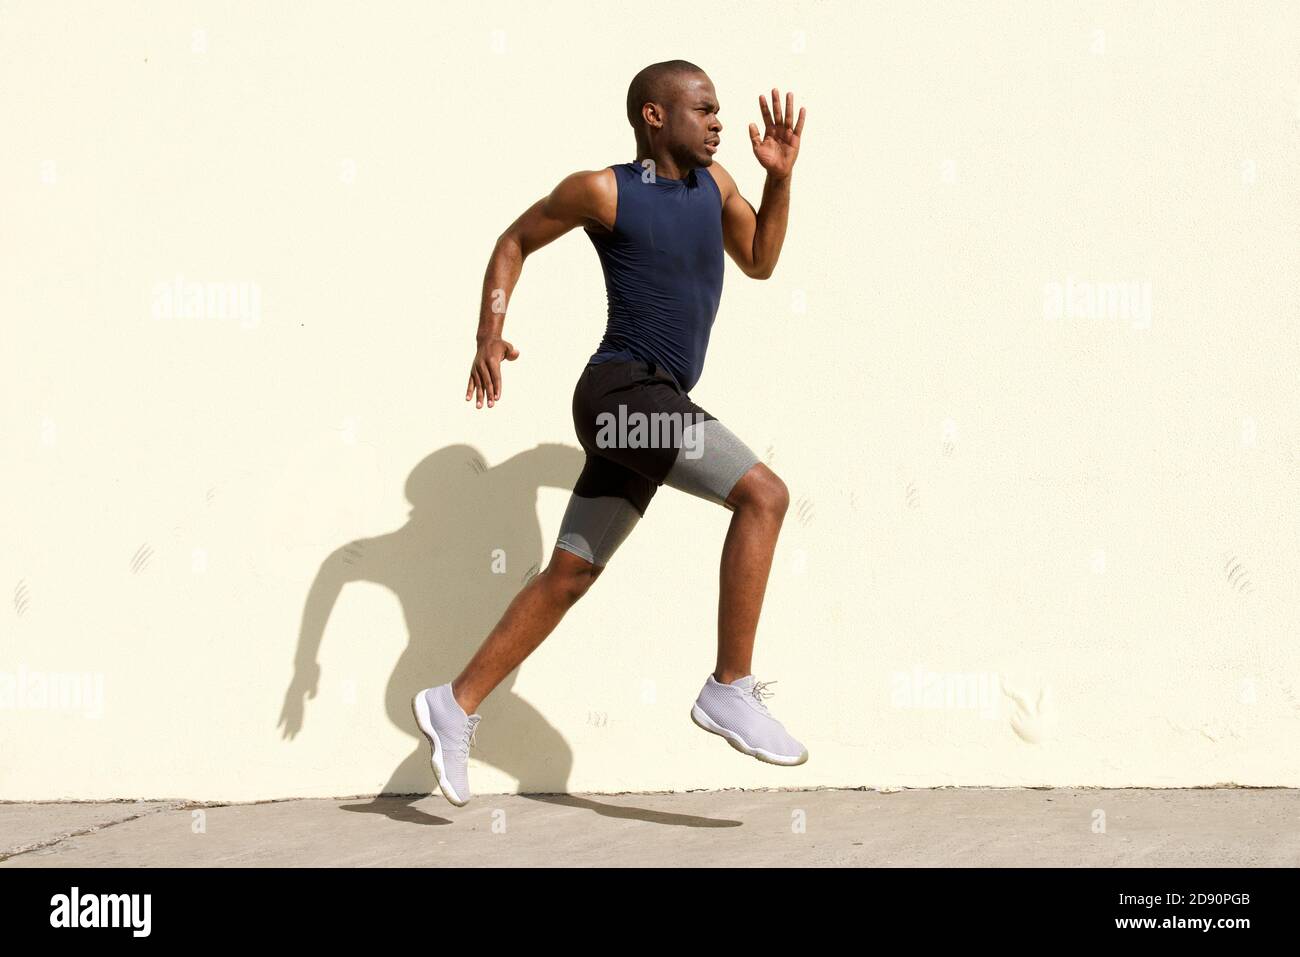 Portrait du corps entier sur le côté d'un jeune homme noir en bonne santé qui court par mur Banque D'Images